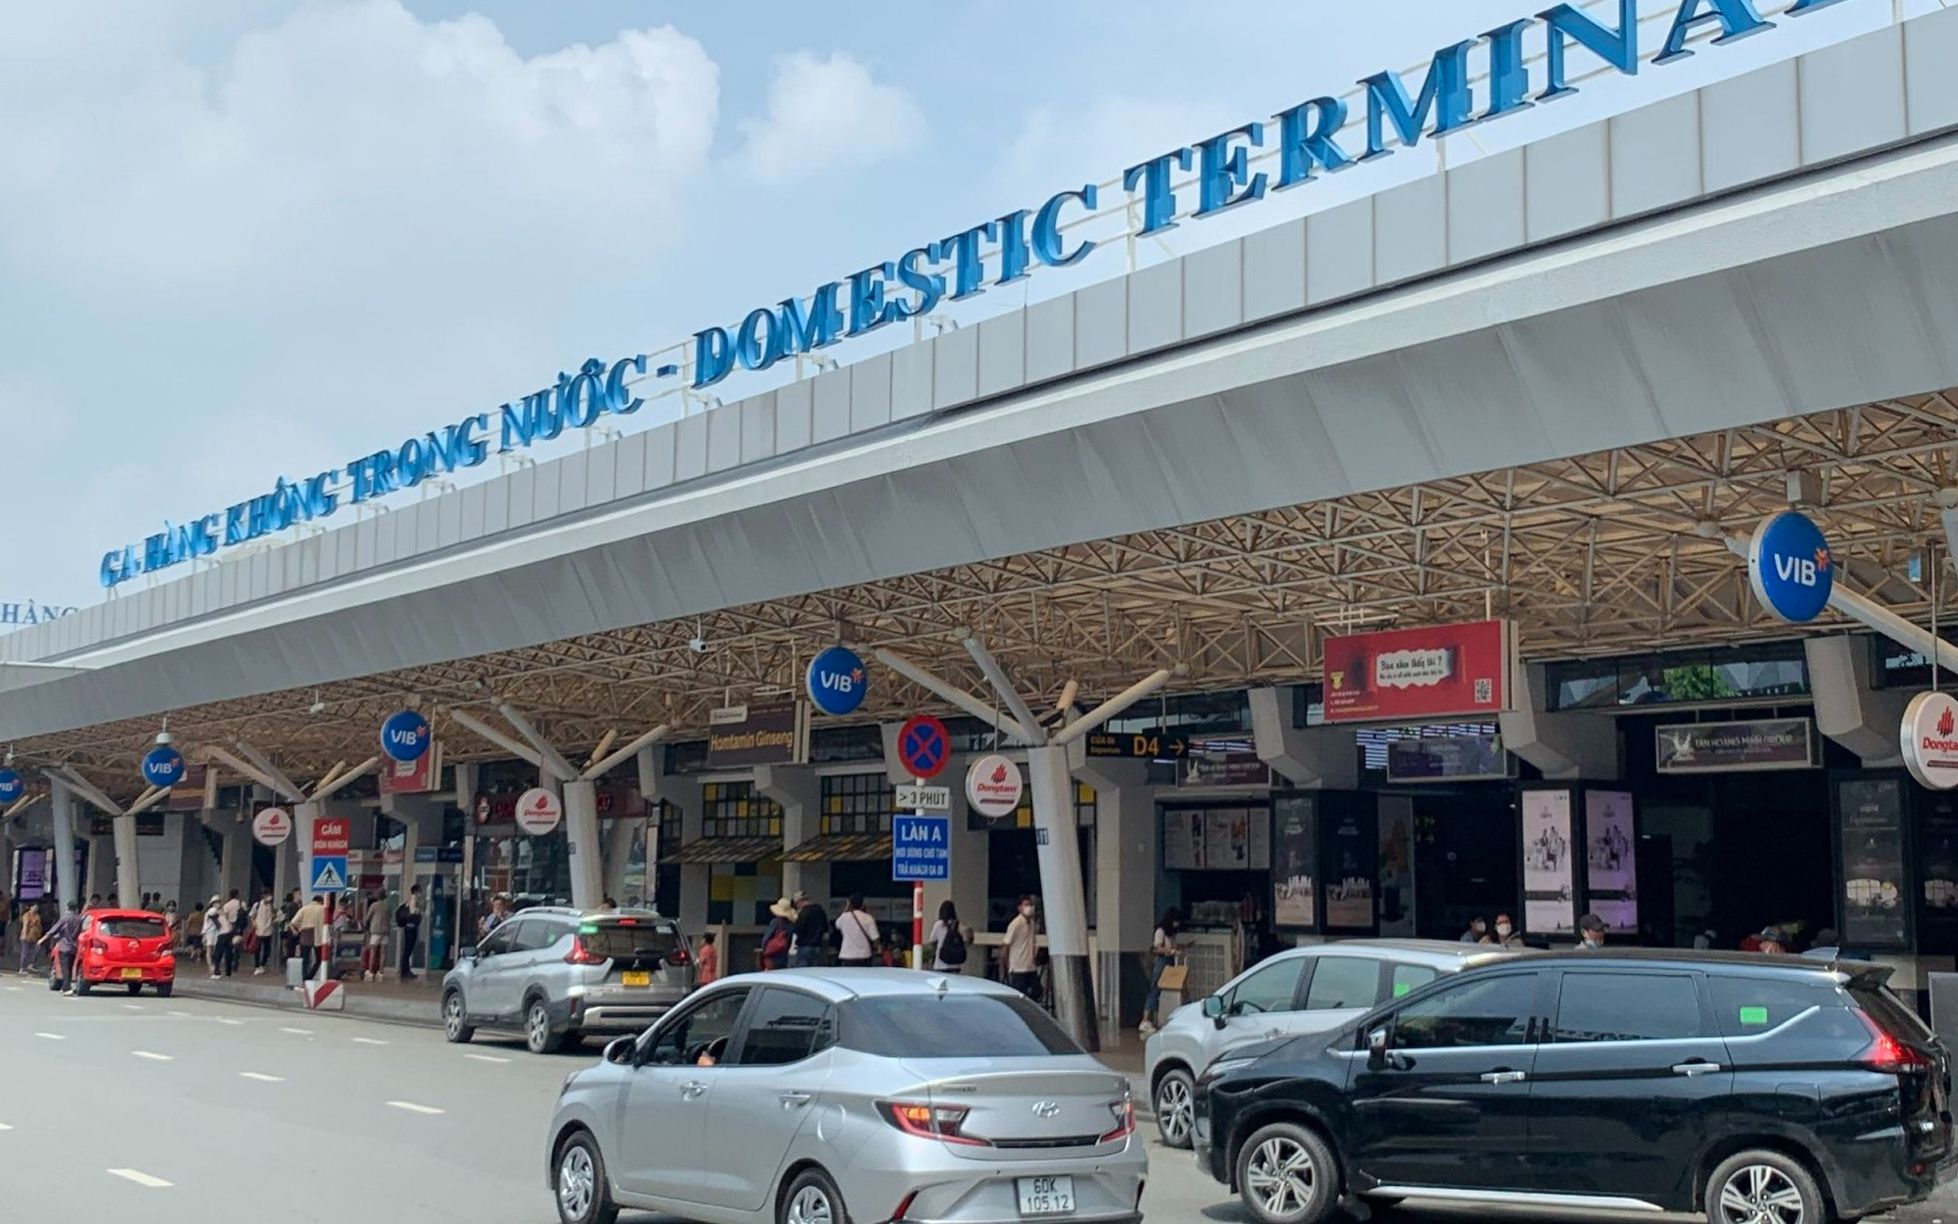 Hướng dẫn di chuyển từ chung cư Sacomreal - 584 đến sân bay Tân Sơn Nhất